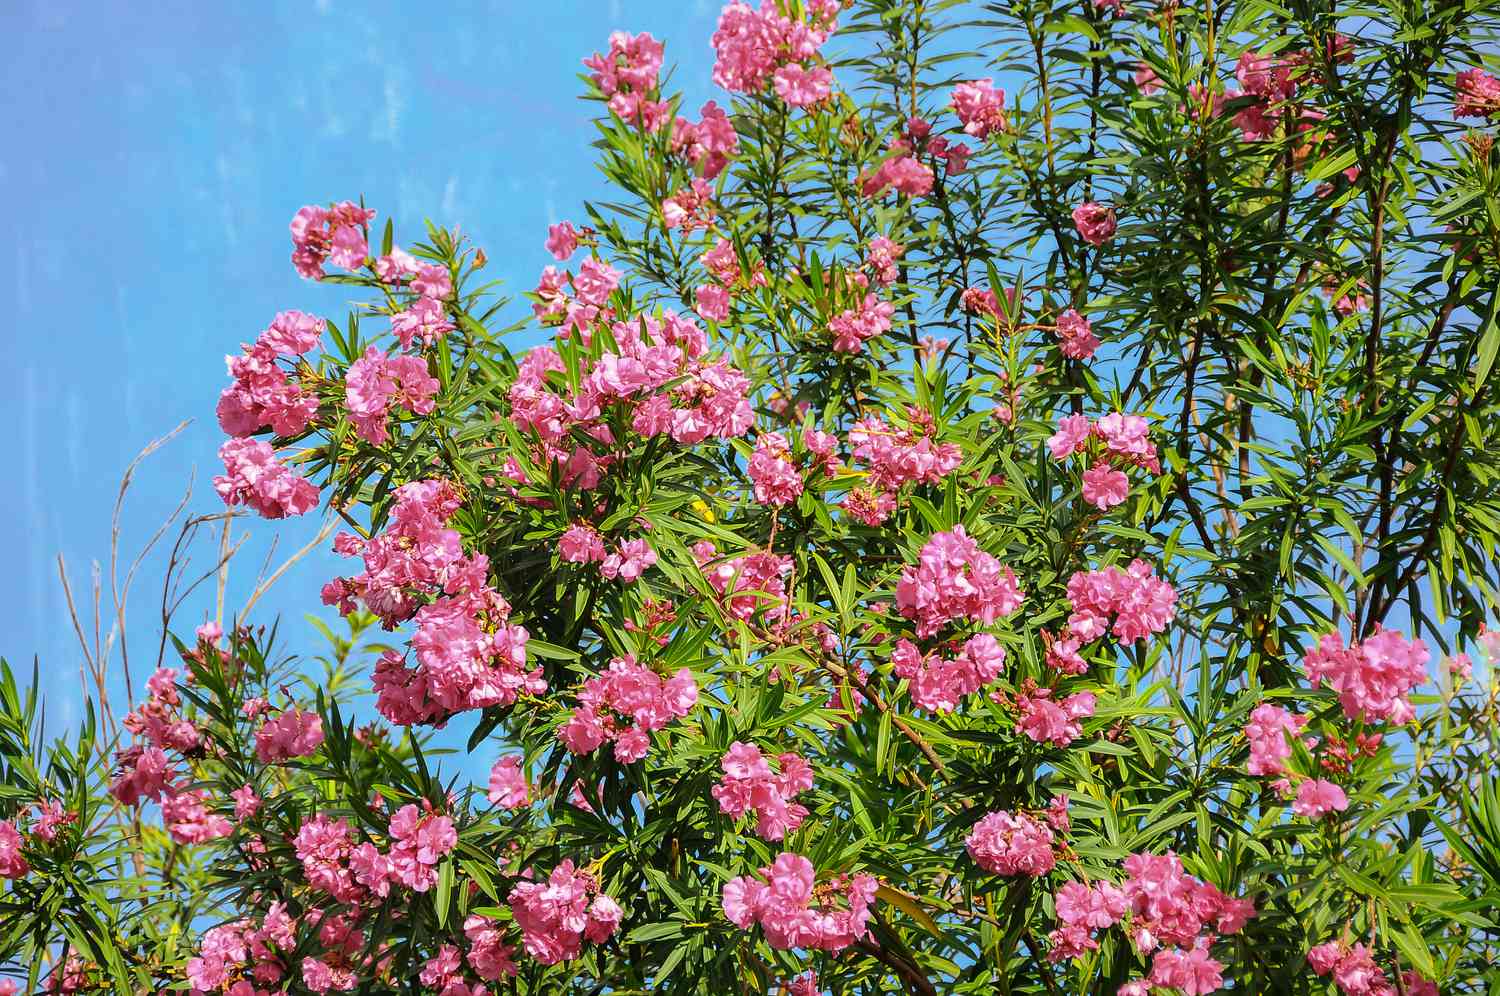 Arbuste de laurier-rose avec des grappes de fleurs roses sur des branches à plusieurs tiges avec de longues feuilles